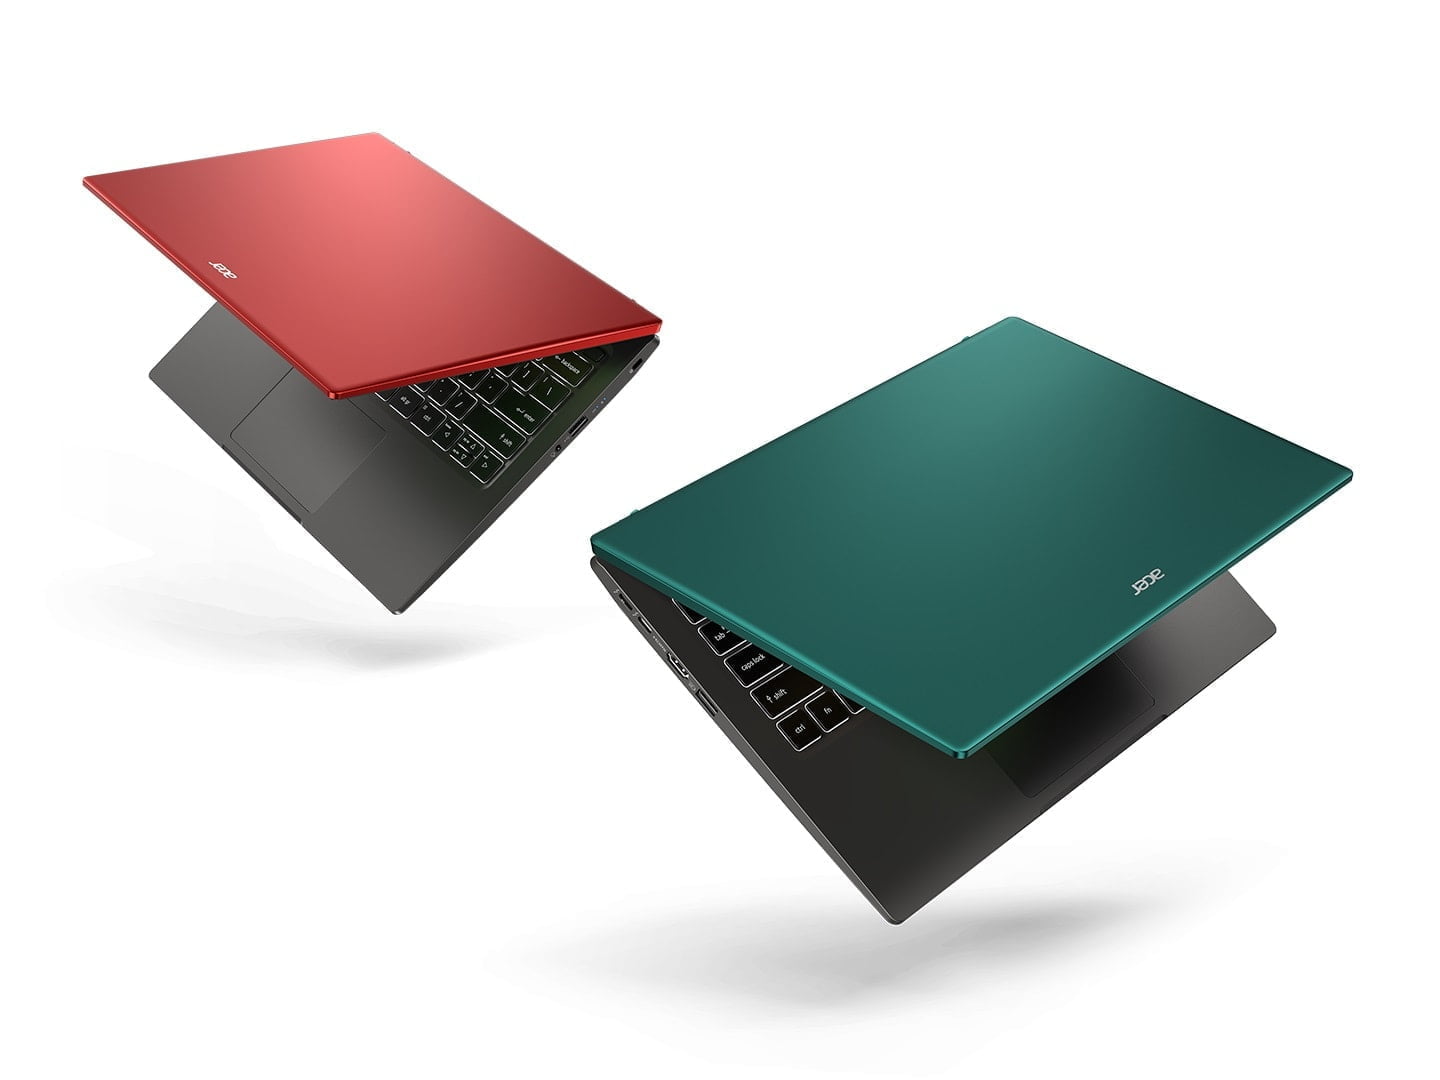 Acer mạnh tay nâng cấp cấu hình, tính siêu di động cho mẫu laptop Swift X